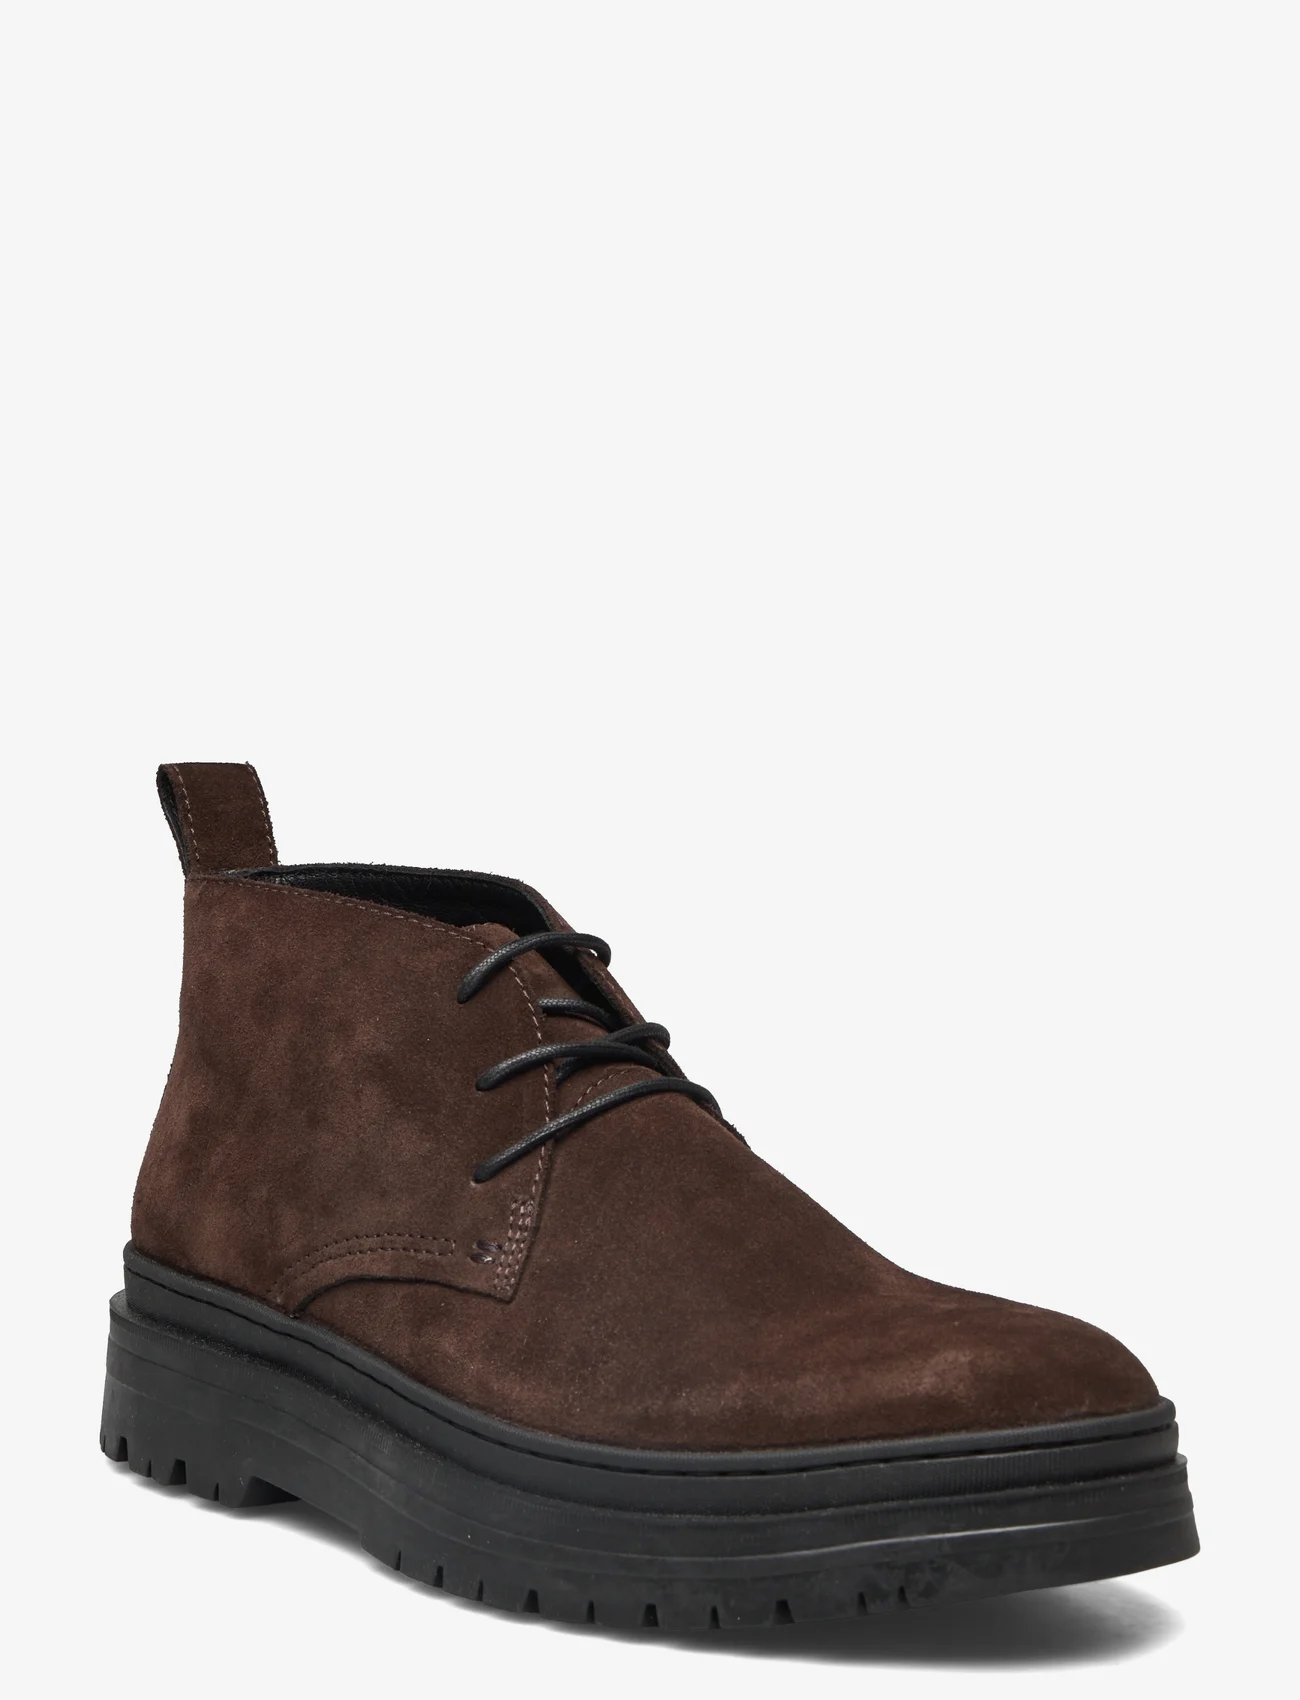 VAGABOND - JAMES - desert boots - dark brown - 0